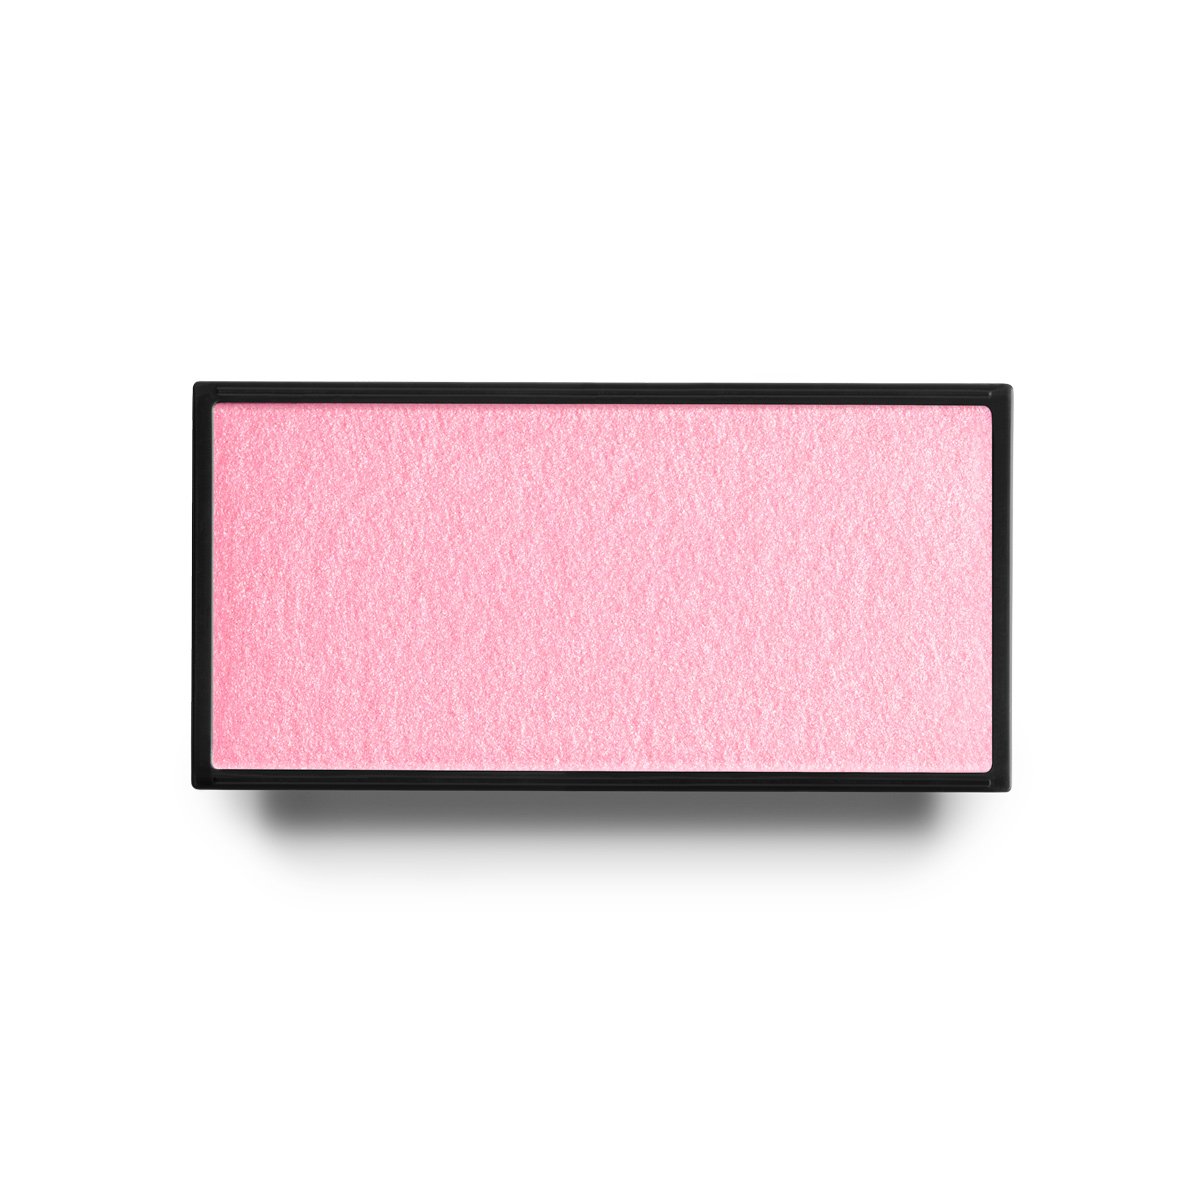 BARBE A PAPA - SATIN SHIMMER COOL BRIGHT PINK - shimmer finish powder blush in cool bright pink shade